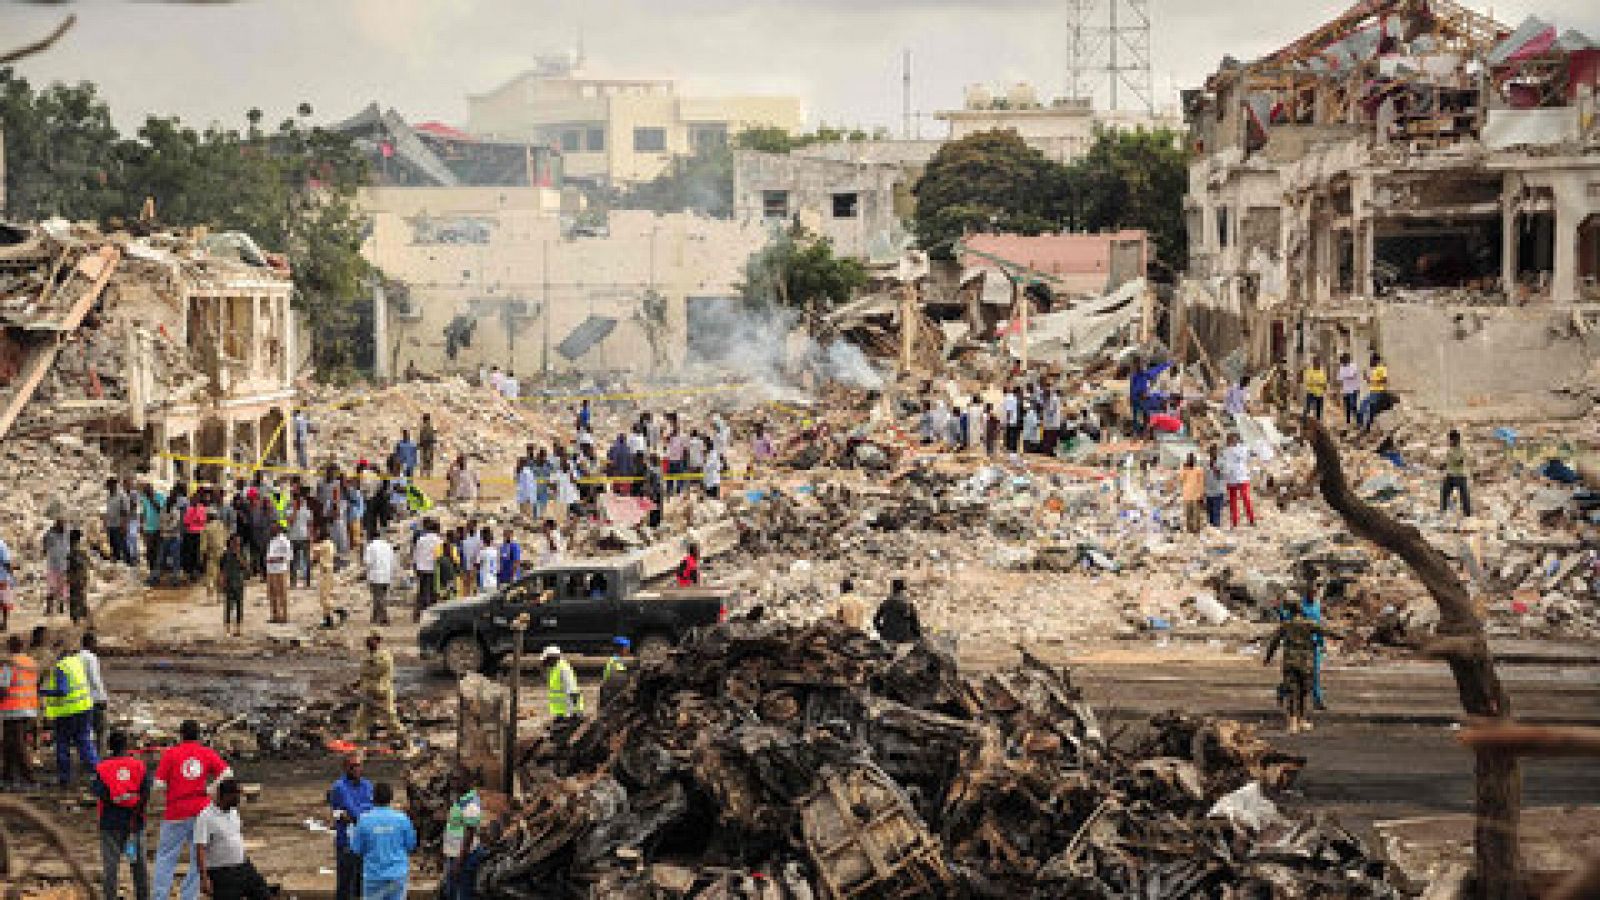 El número de muertos en el atentado de Mogadiscio supera los 200